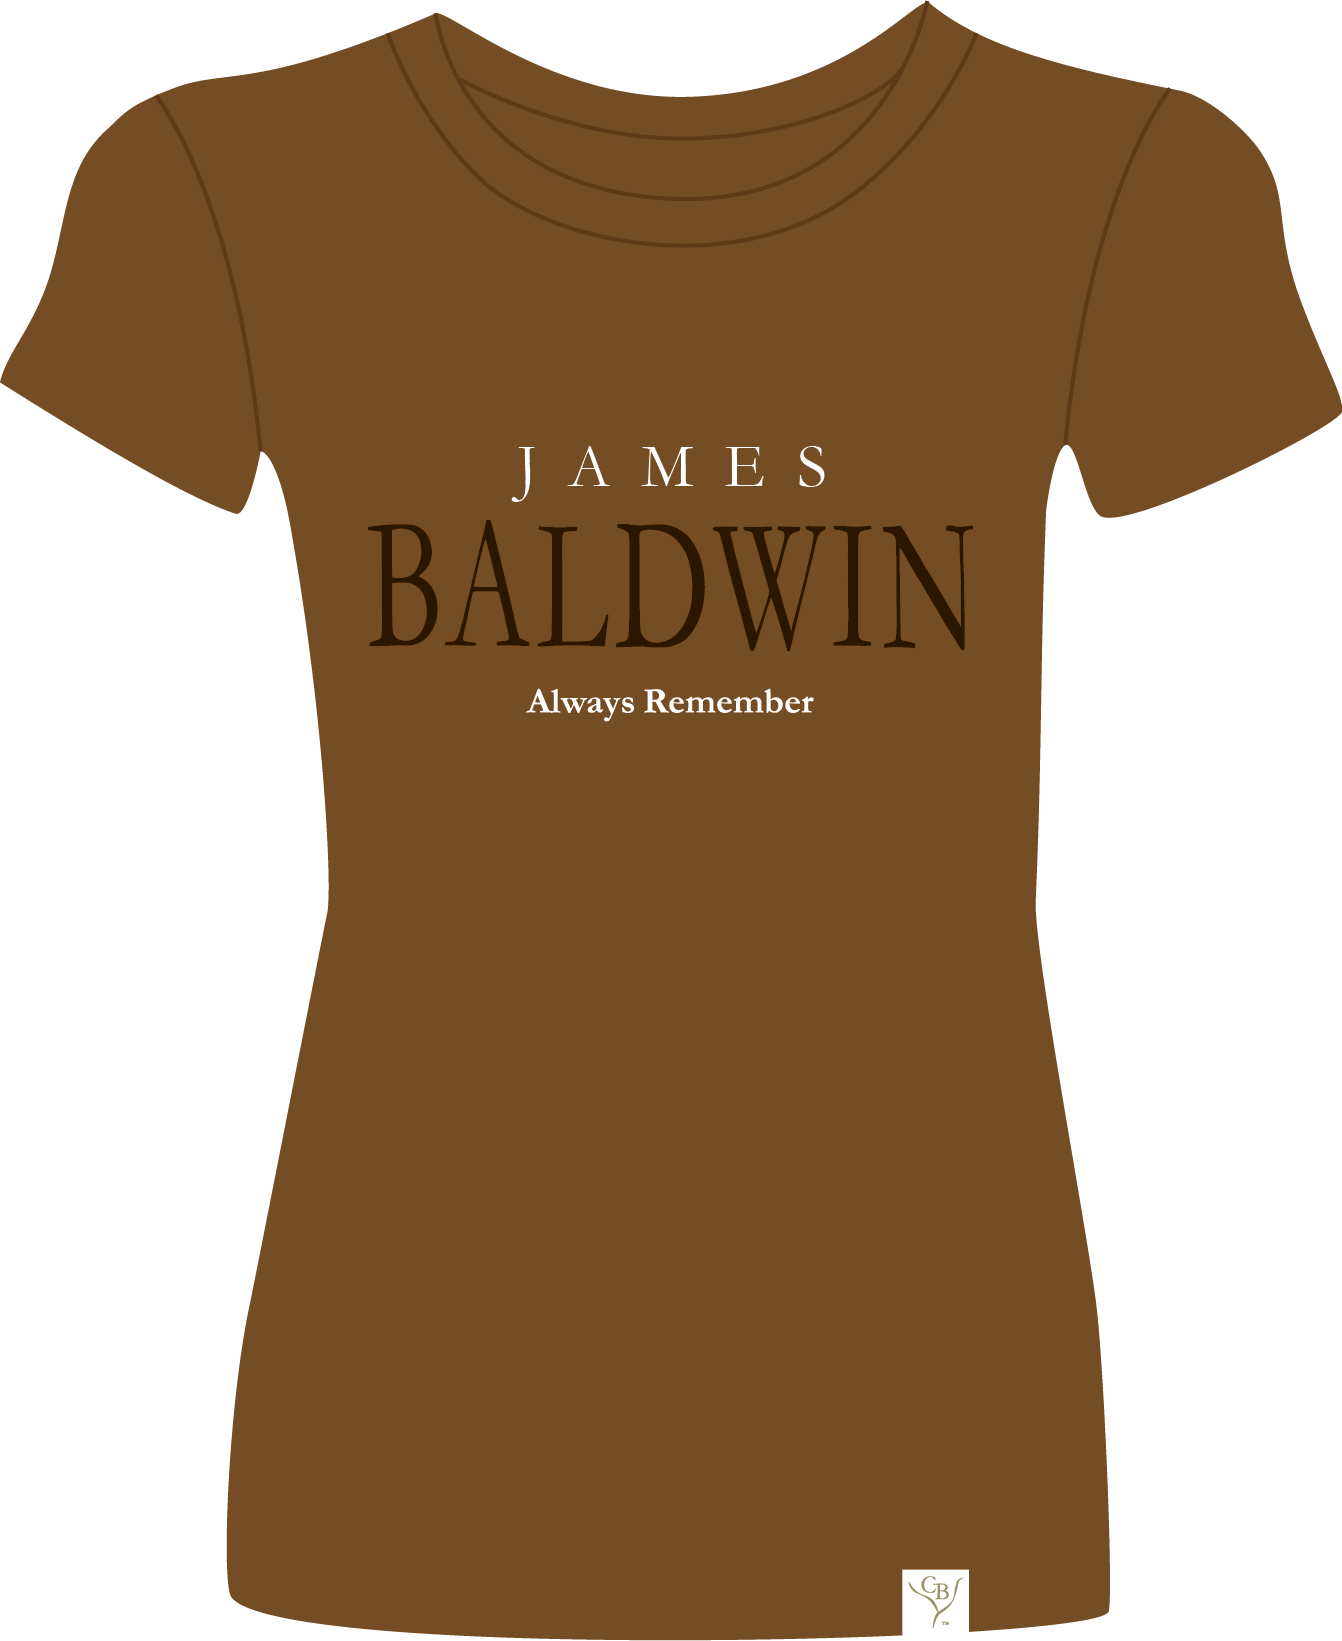 The Baldwin W